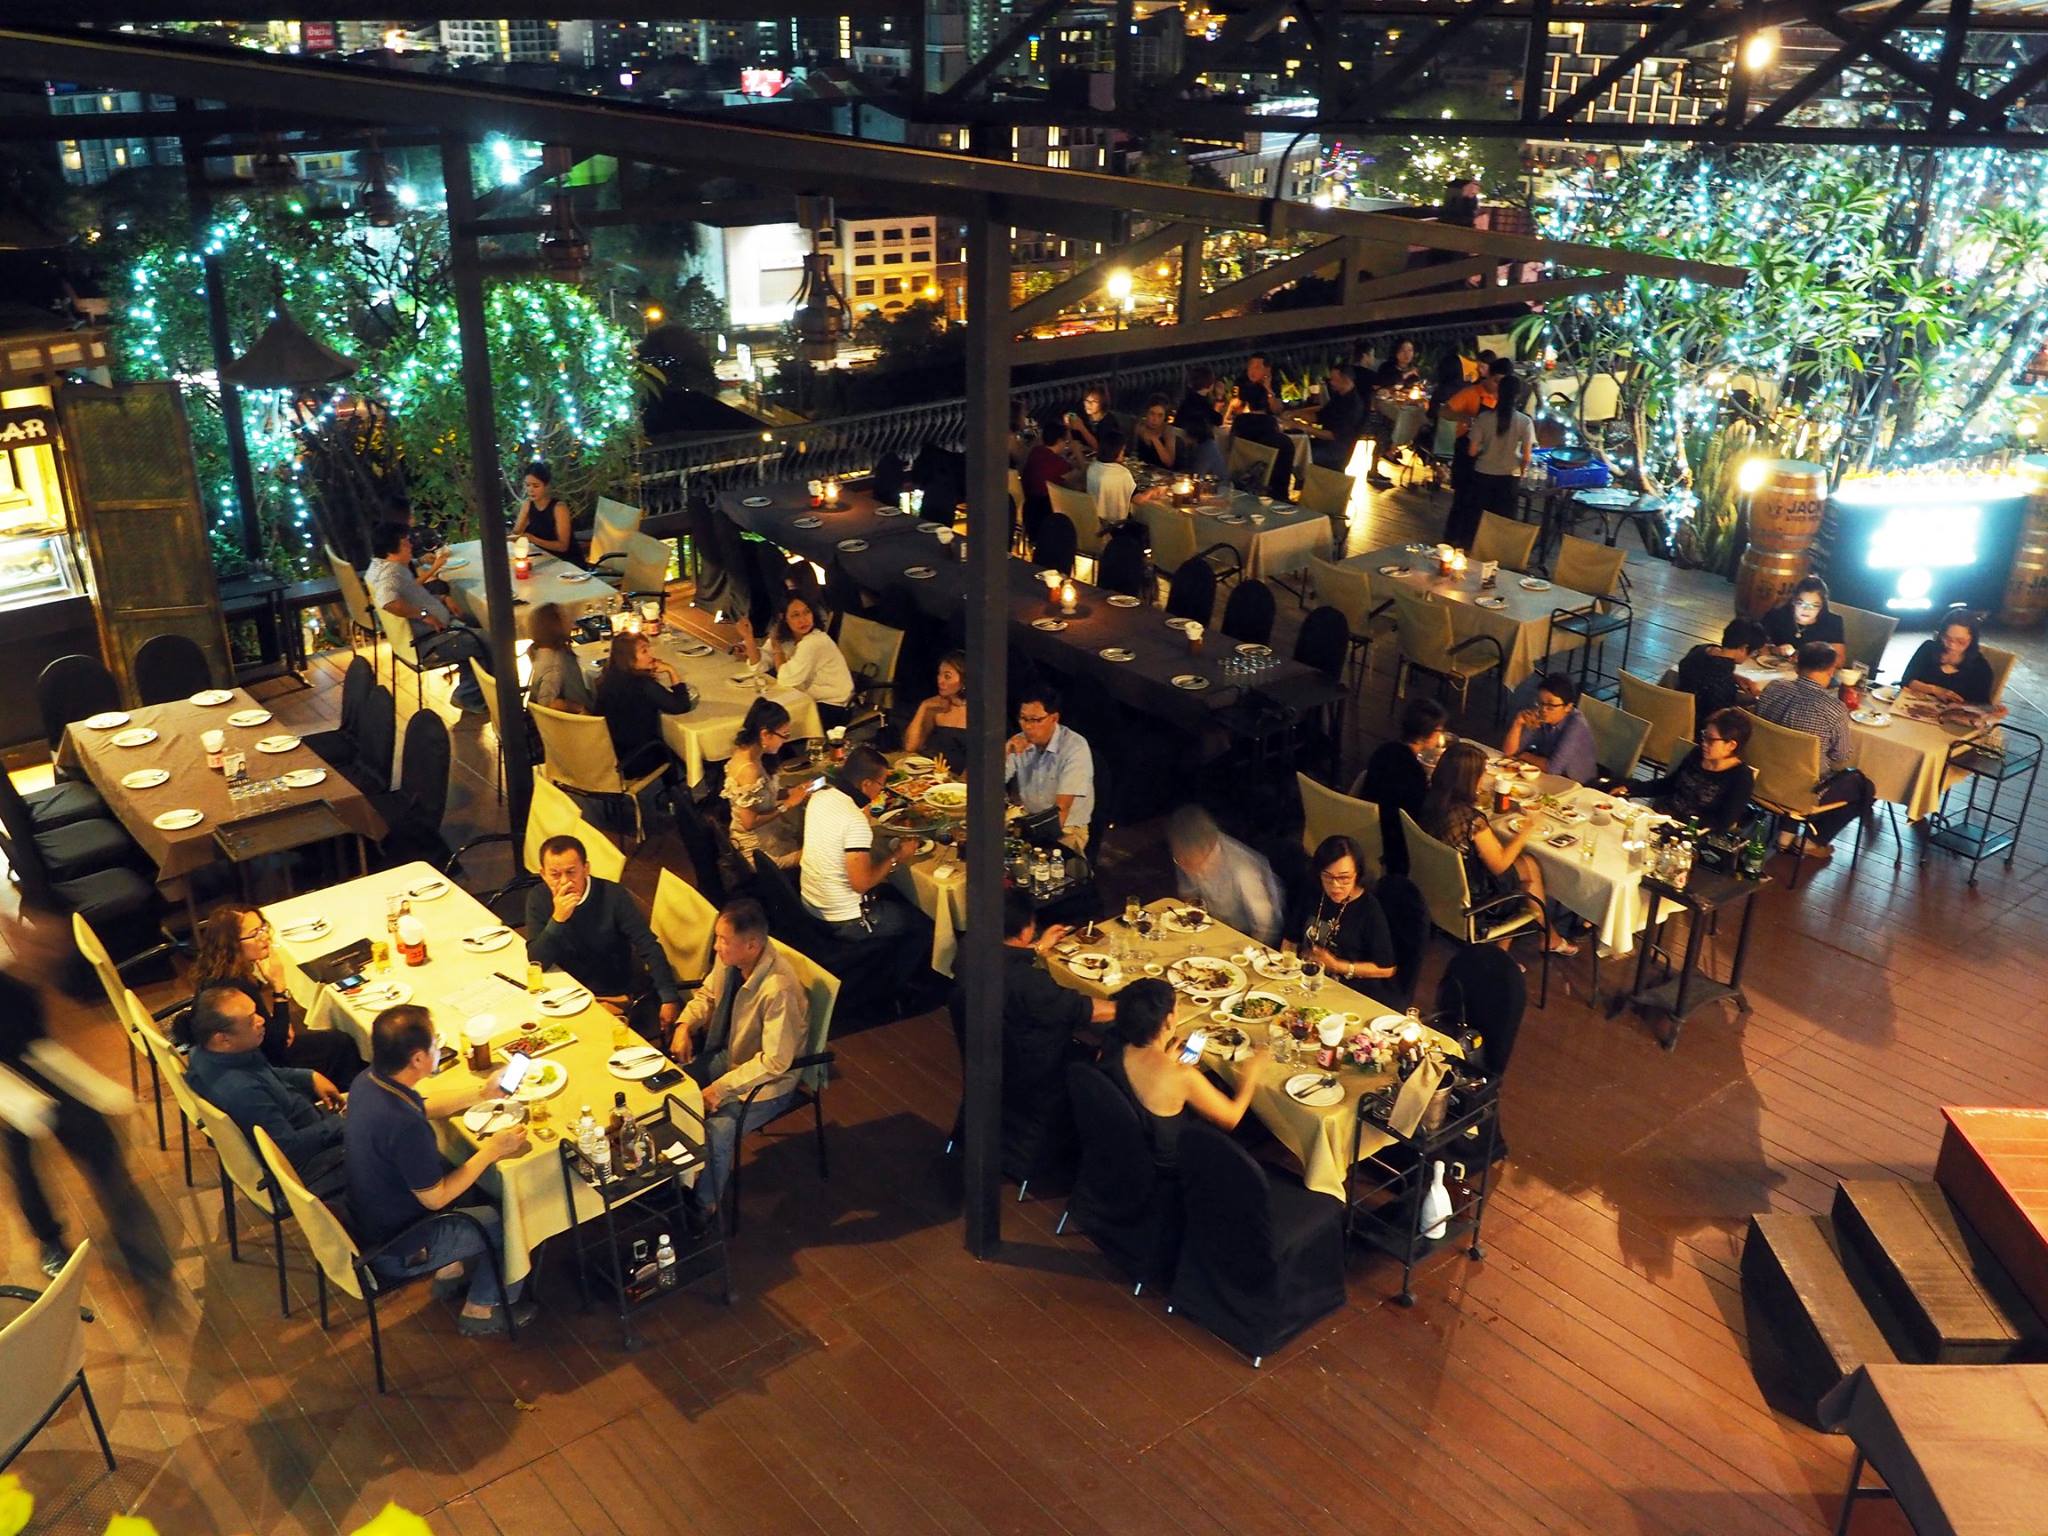 ซานาดู ผับ แอนด์ เรสเตอรองท์ (Xanadu Pub & Restaurant) : เชียงใหม่ (Chiang Mai)